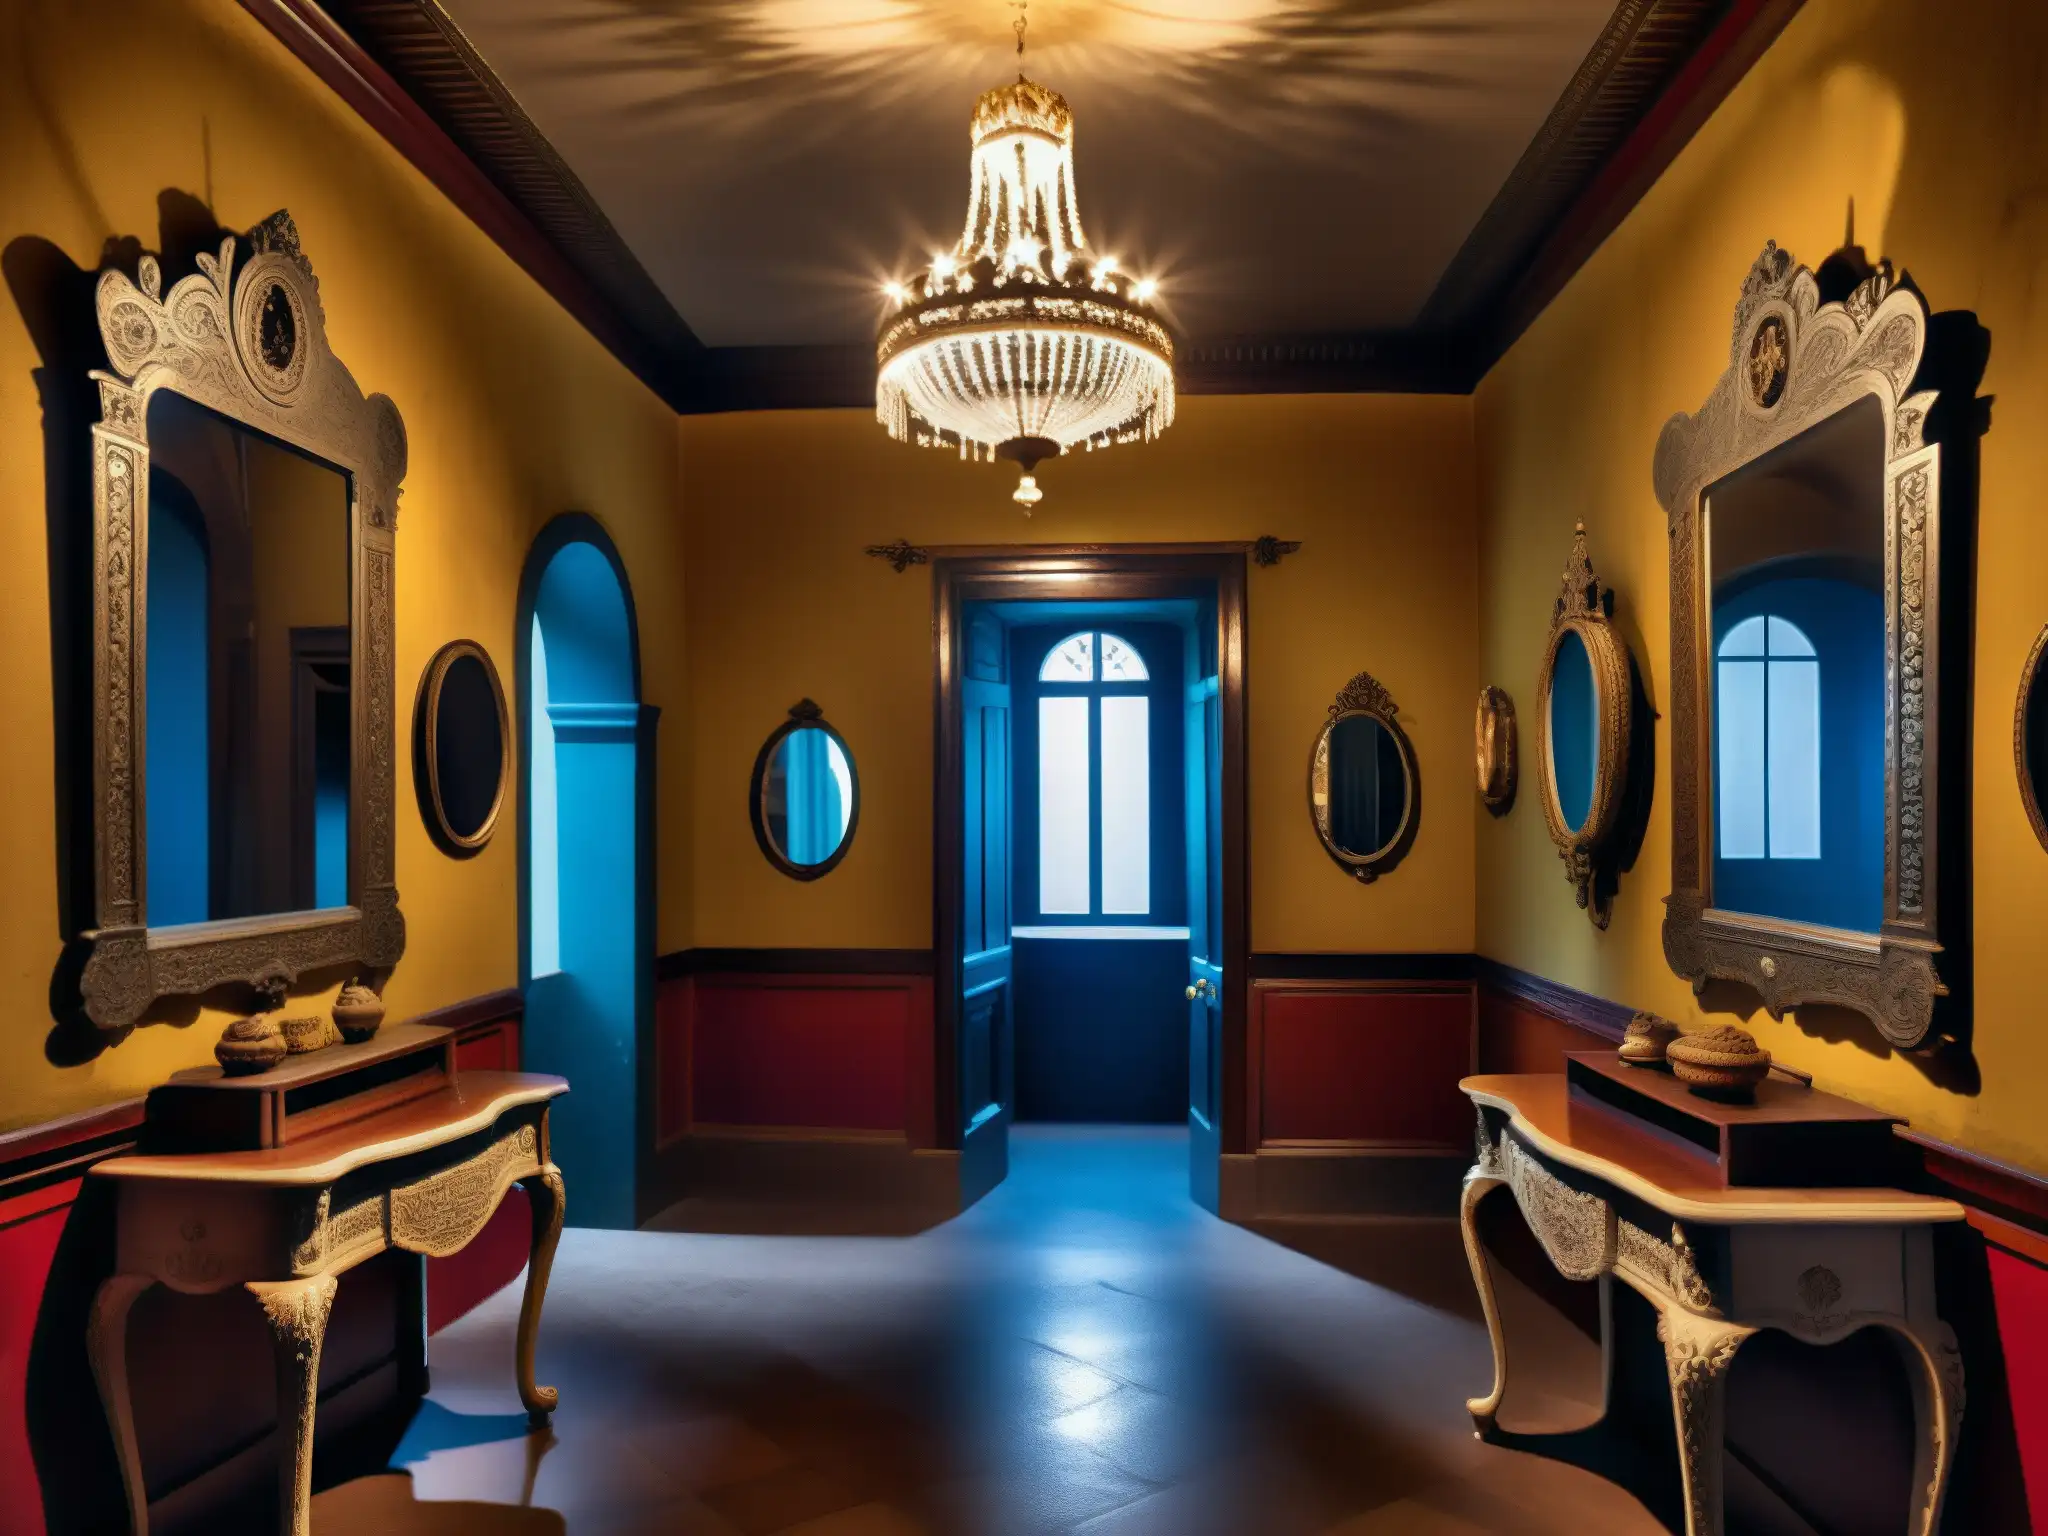 Detallada imagen del interior fantasmal de La Casa de los Espejos en Quito, con una atmósfera misteriosa y ornamentos intrincados